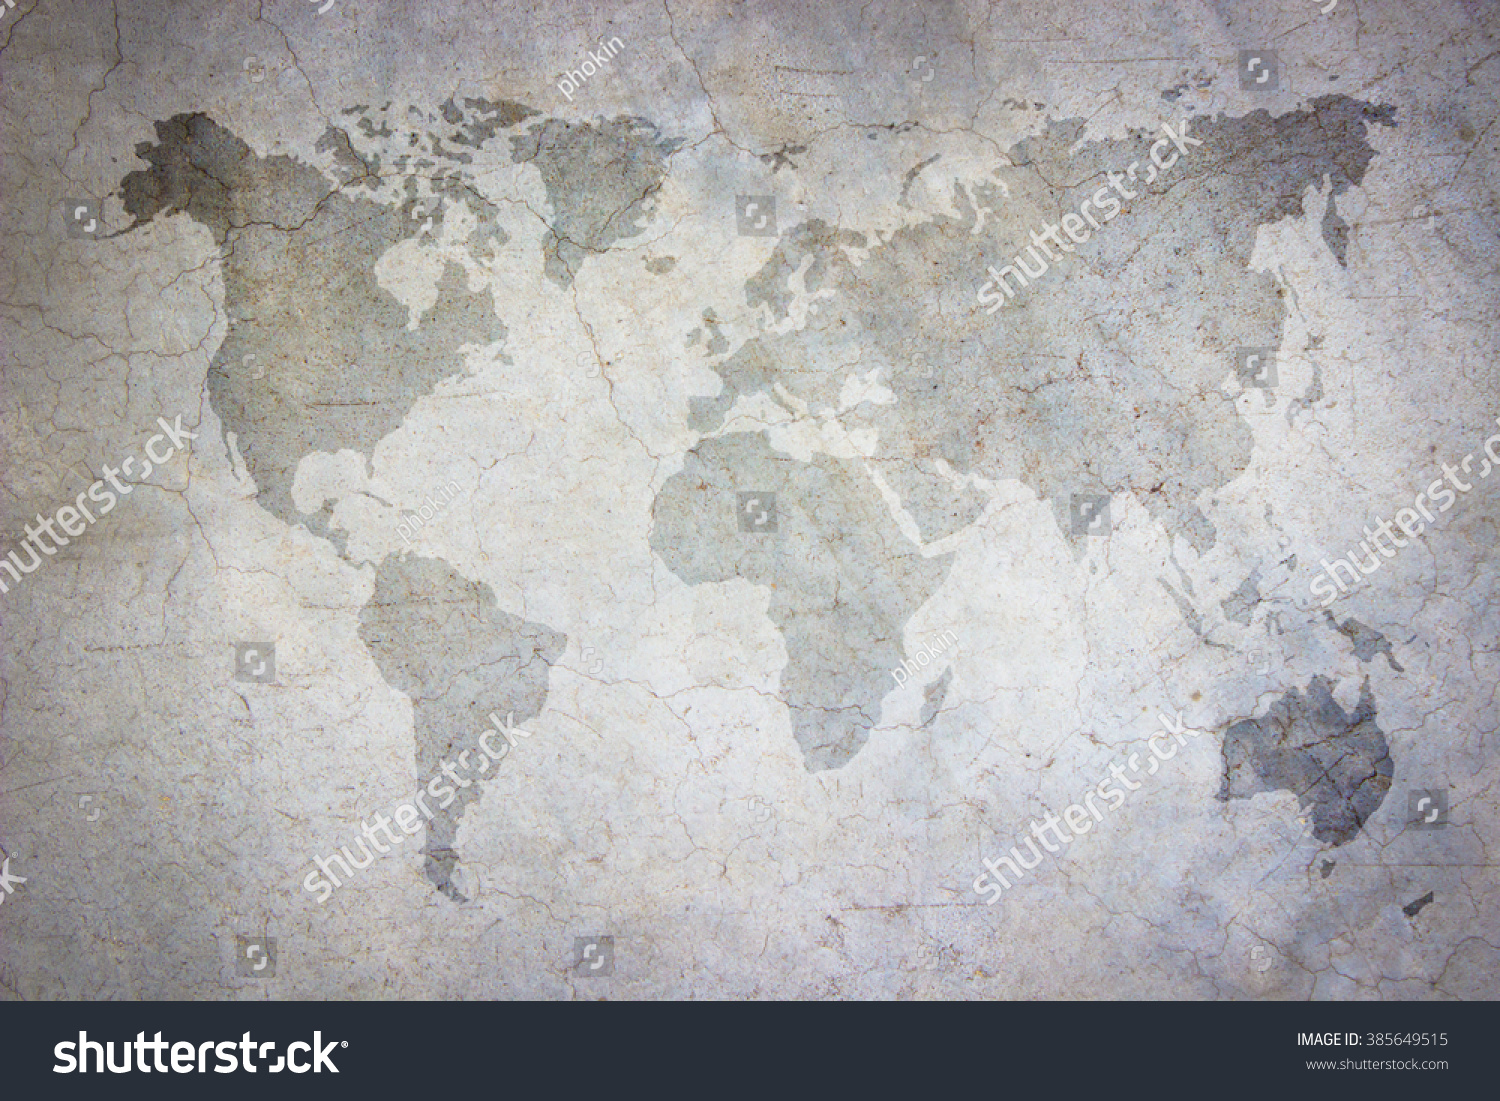 World Map Vintage Patternart Concrete Texture Stock Photo Edit Now